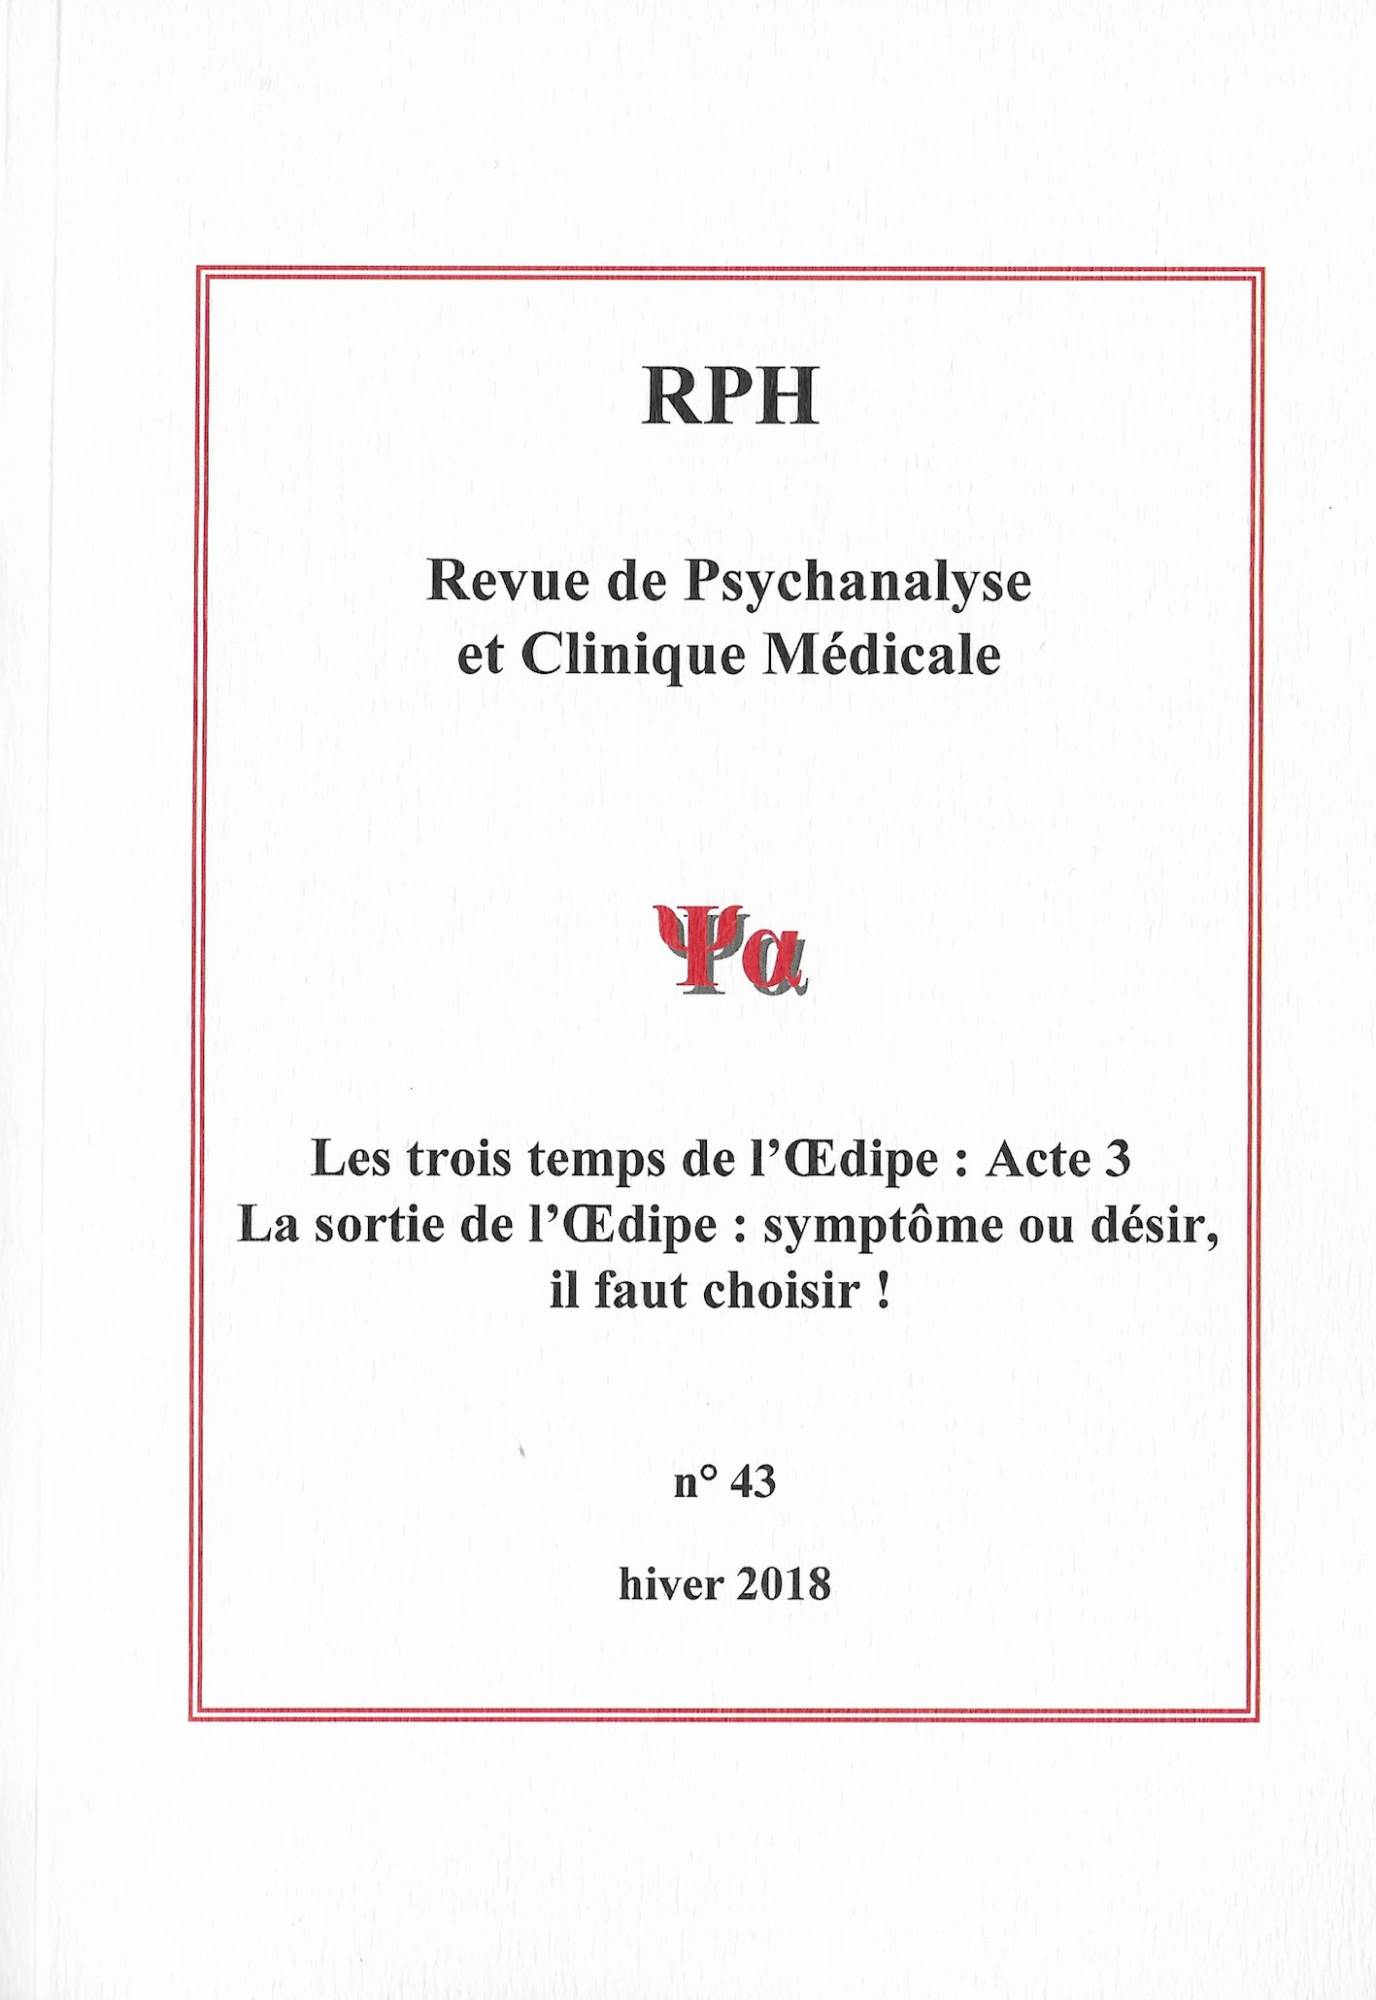 Acheter revue de psychanalyse à Paris 8è